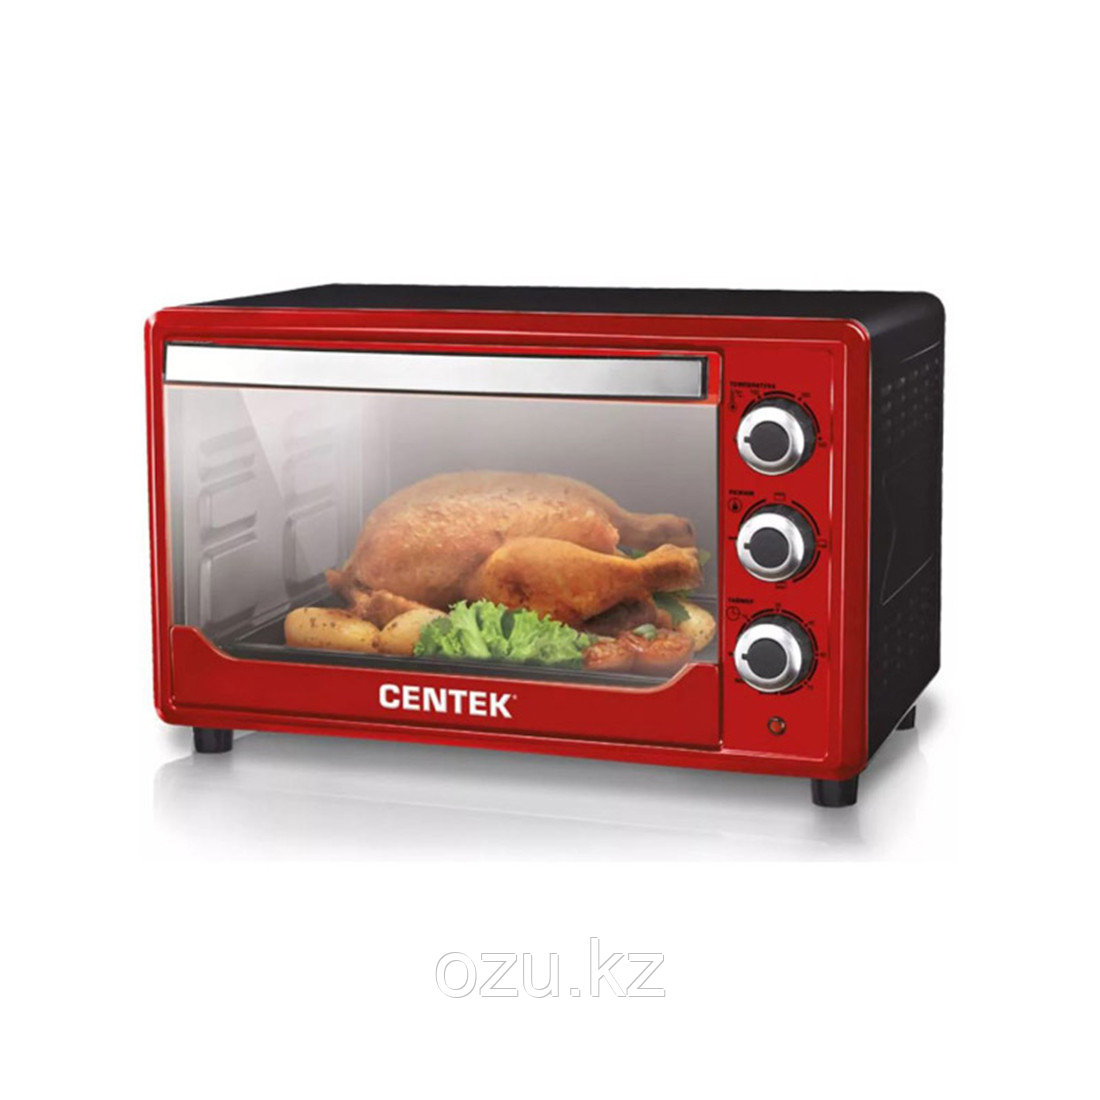 Электрическая печь Centek CT-1530-36 Красный